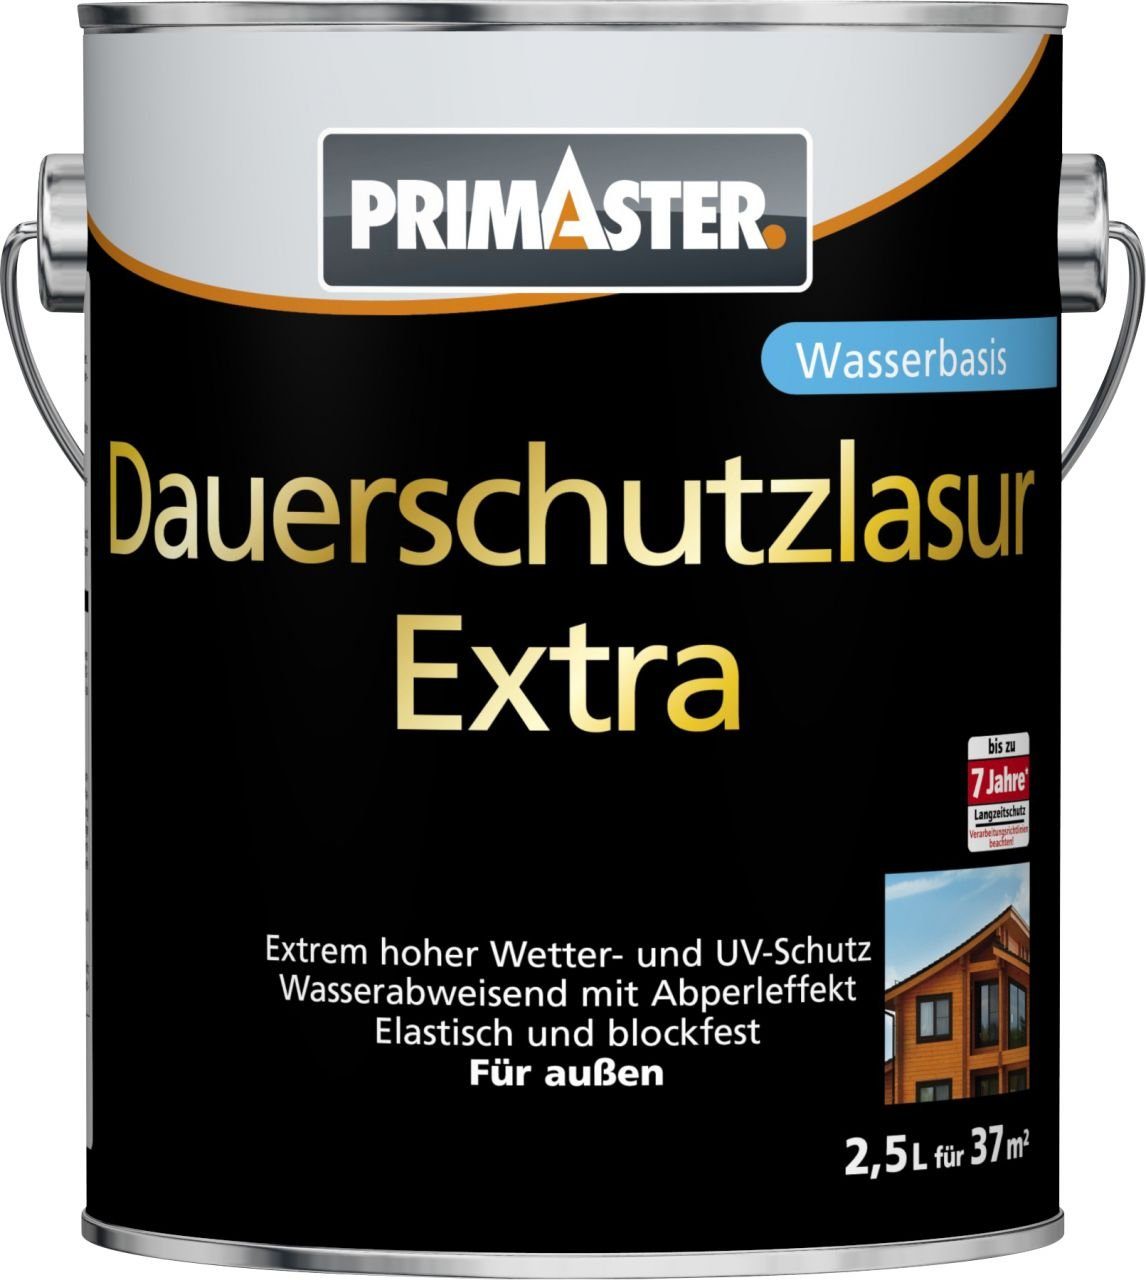 Primaster 2,5 L Primaster Lasur Dauerschutzlasur Extra